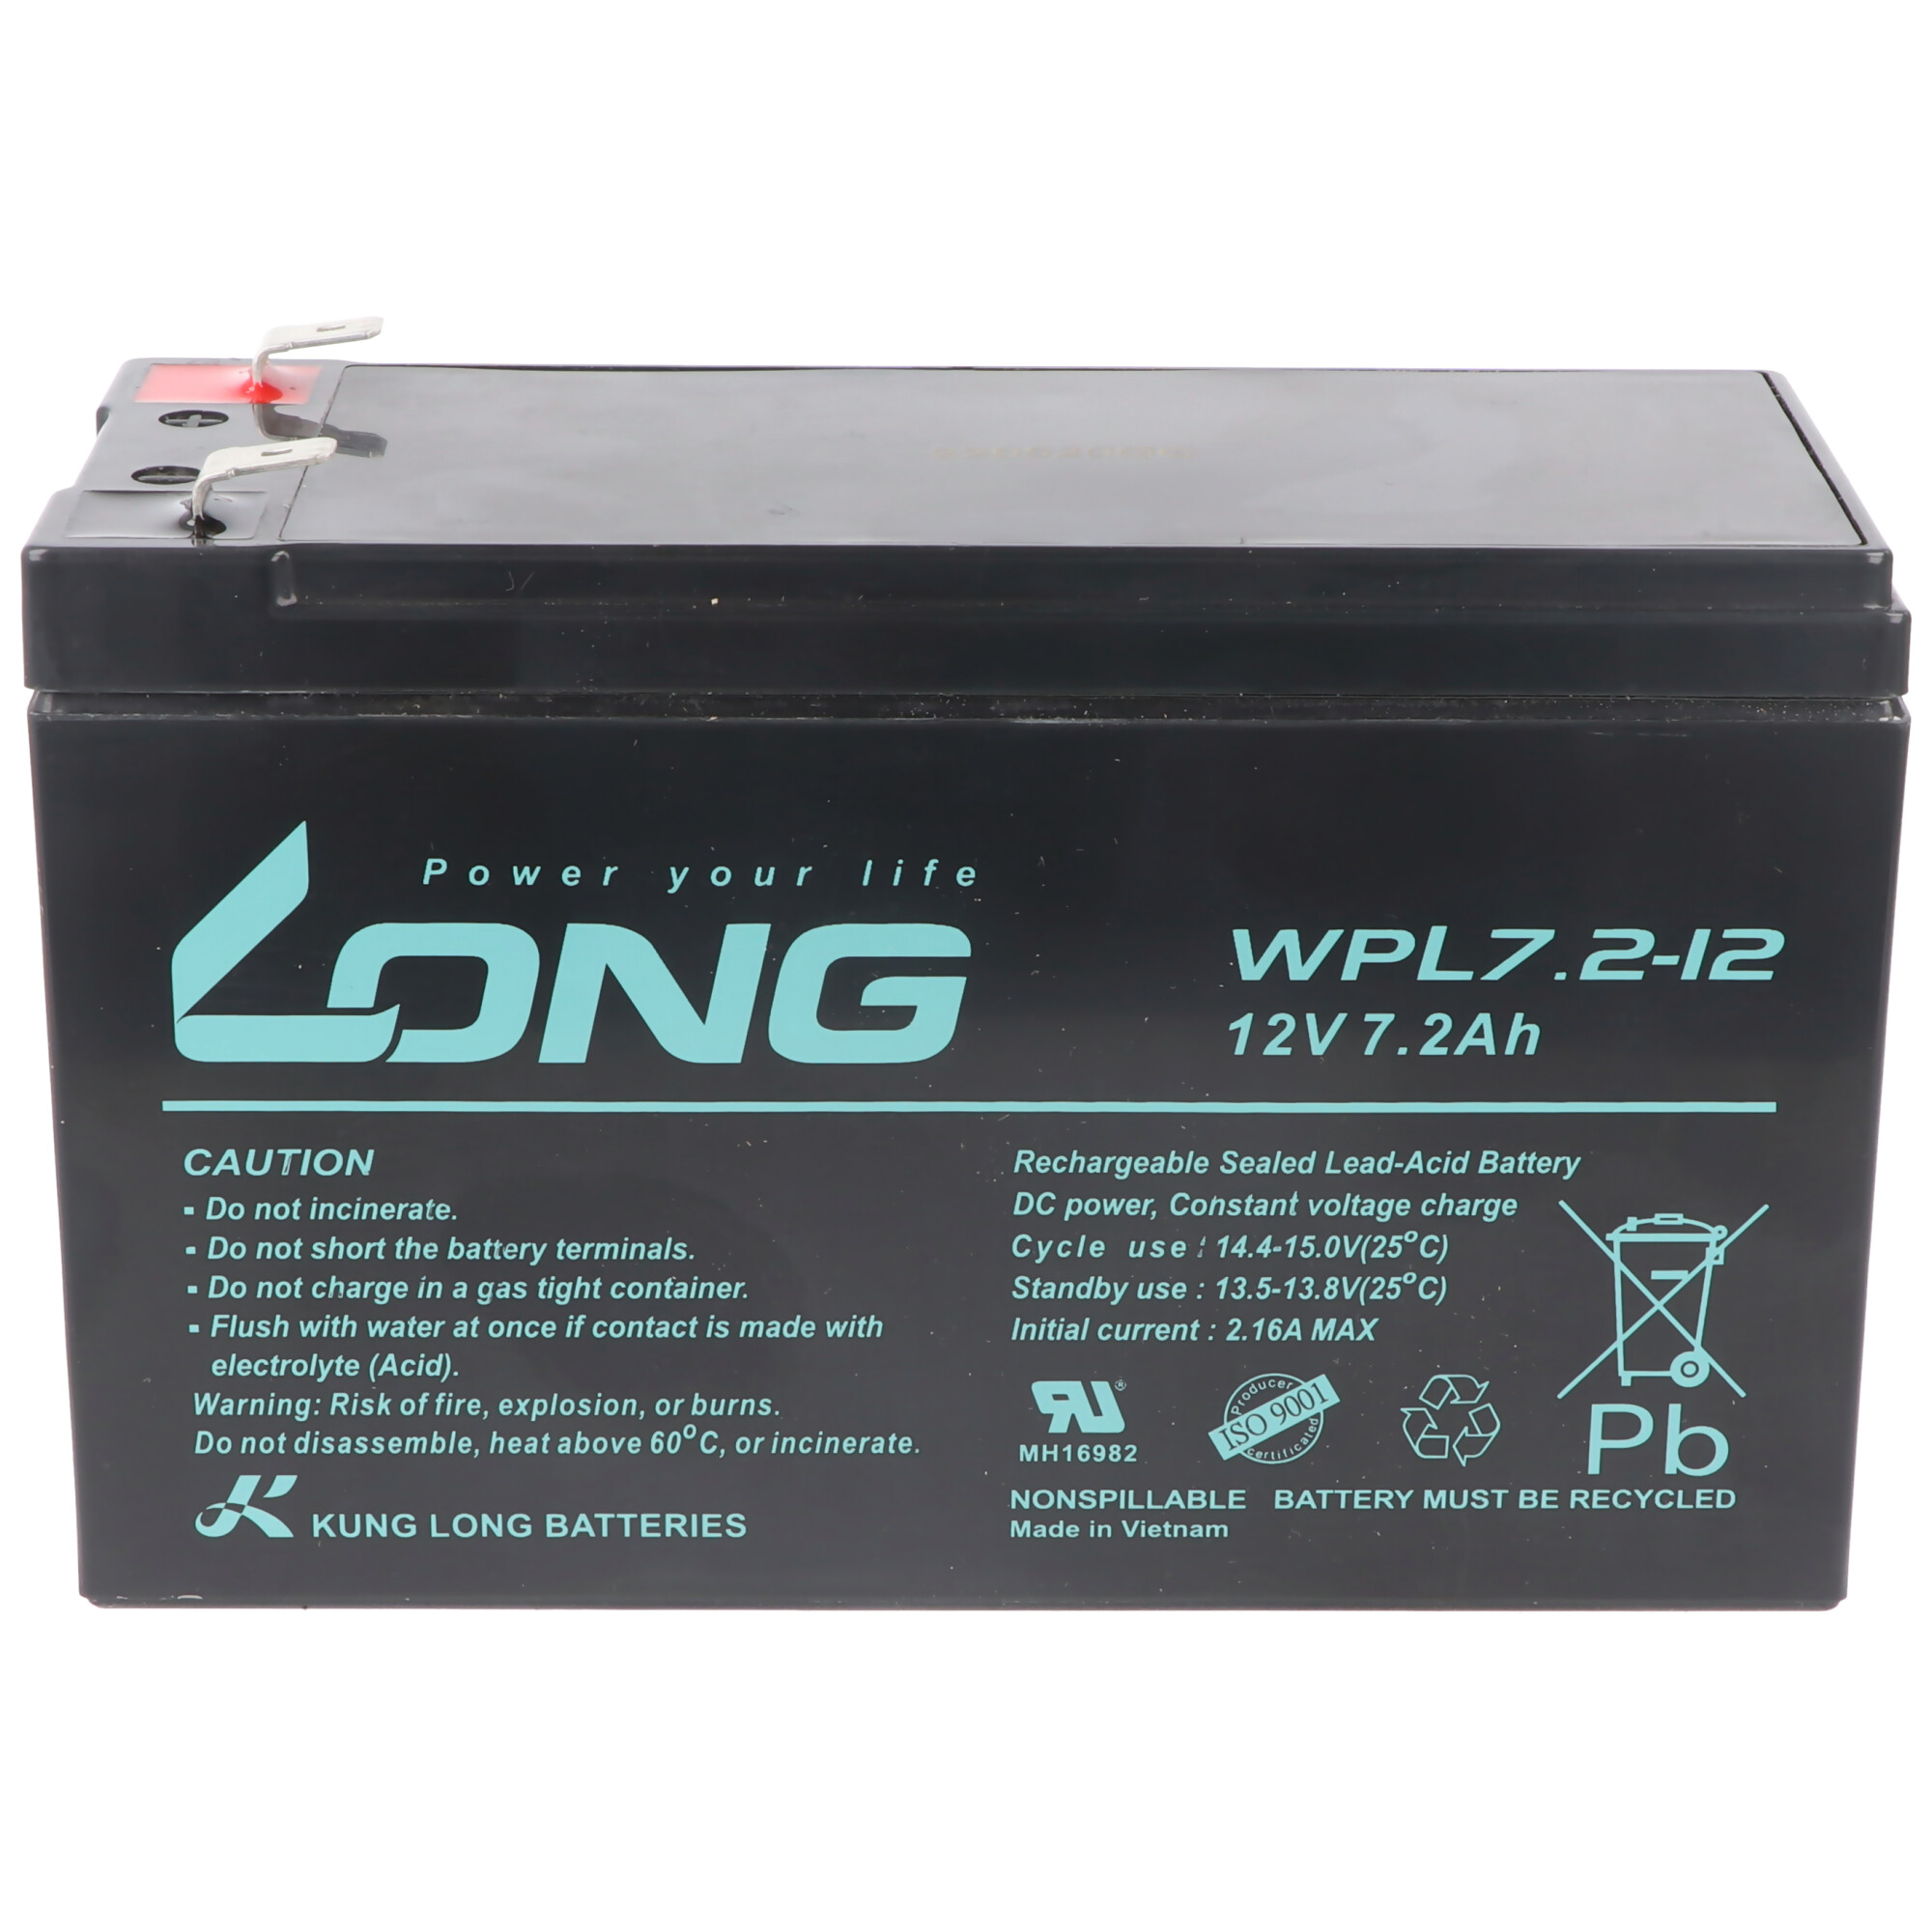 KUNG LONG Kung Long WPL7.2-12 7200 mit 6,3mm mAh Bleiakku, Longlife 12Volt, Blei-Vlies-Akku, Anschluss Pb F2 7,2Ah Blei Faston 